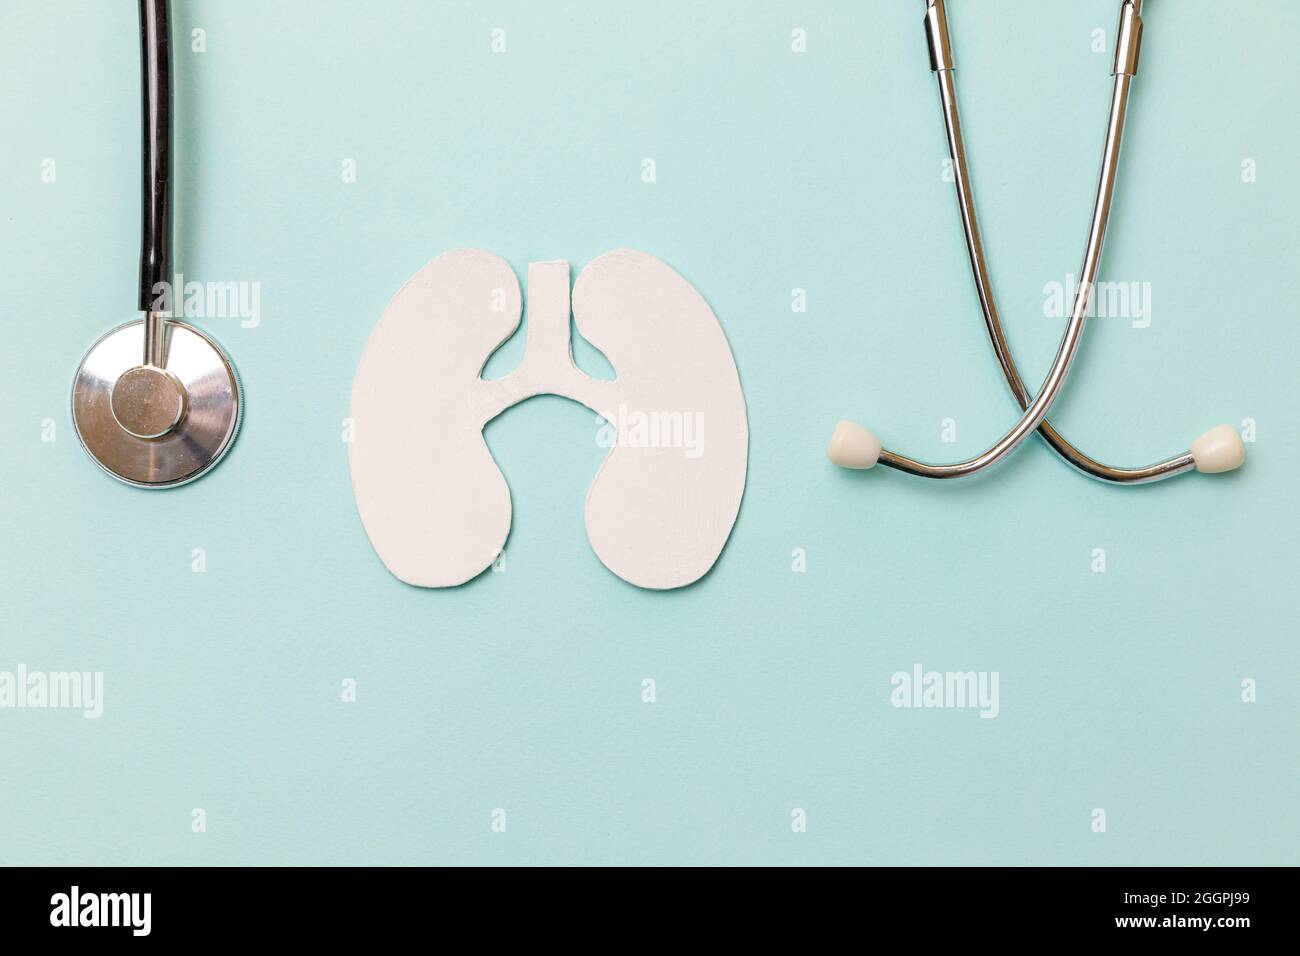 Lunge Gesundheitstherapie medizinisches Konzept. Flaches Lay Design Lungs Symbol Modell, Stethoskop auf pastellblauem Hintergrund. Atemwegserkrankungen Lungenentzündung Tuberkul Stockfoto